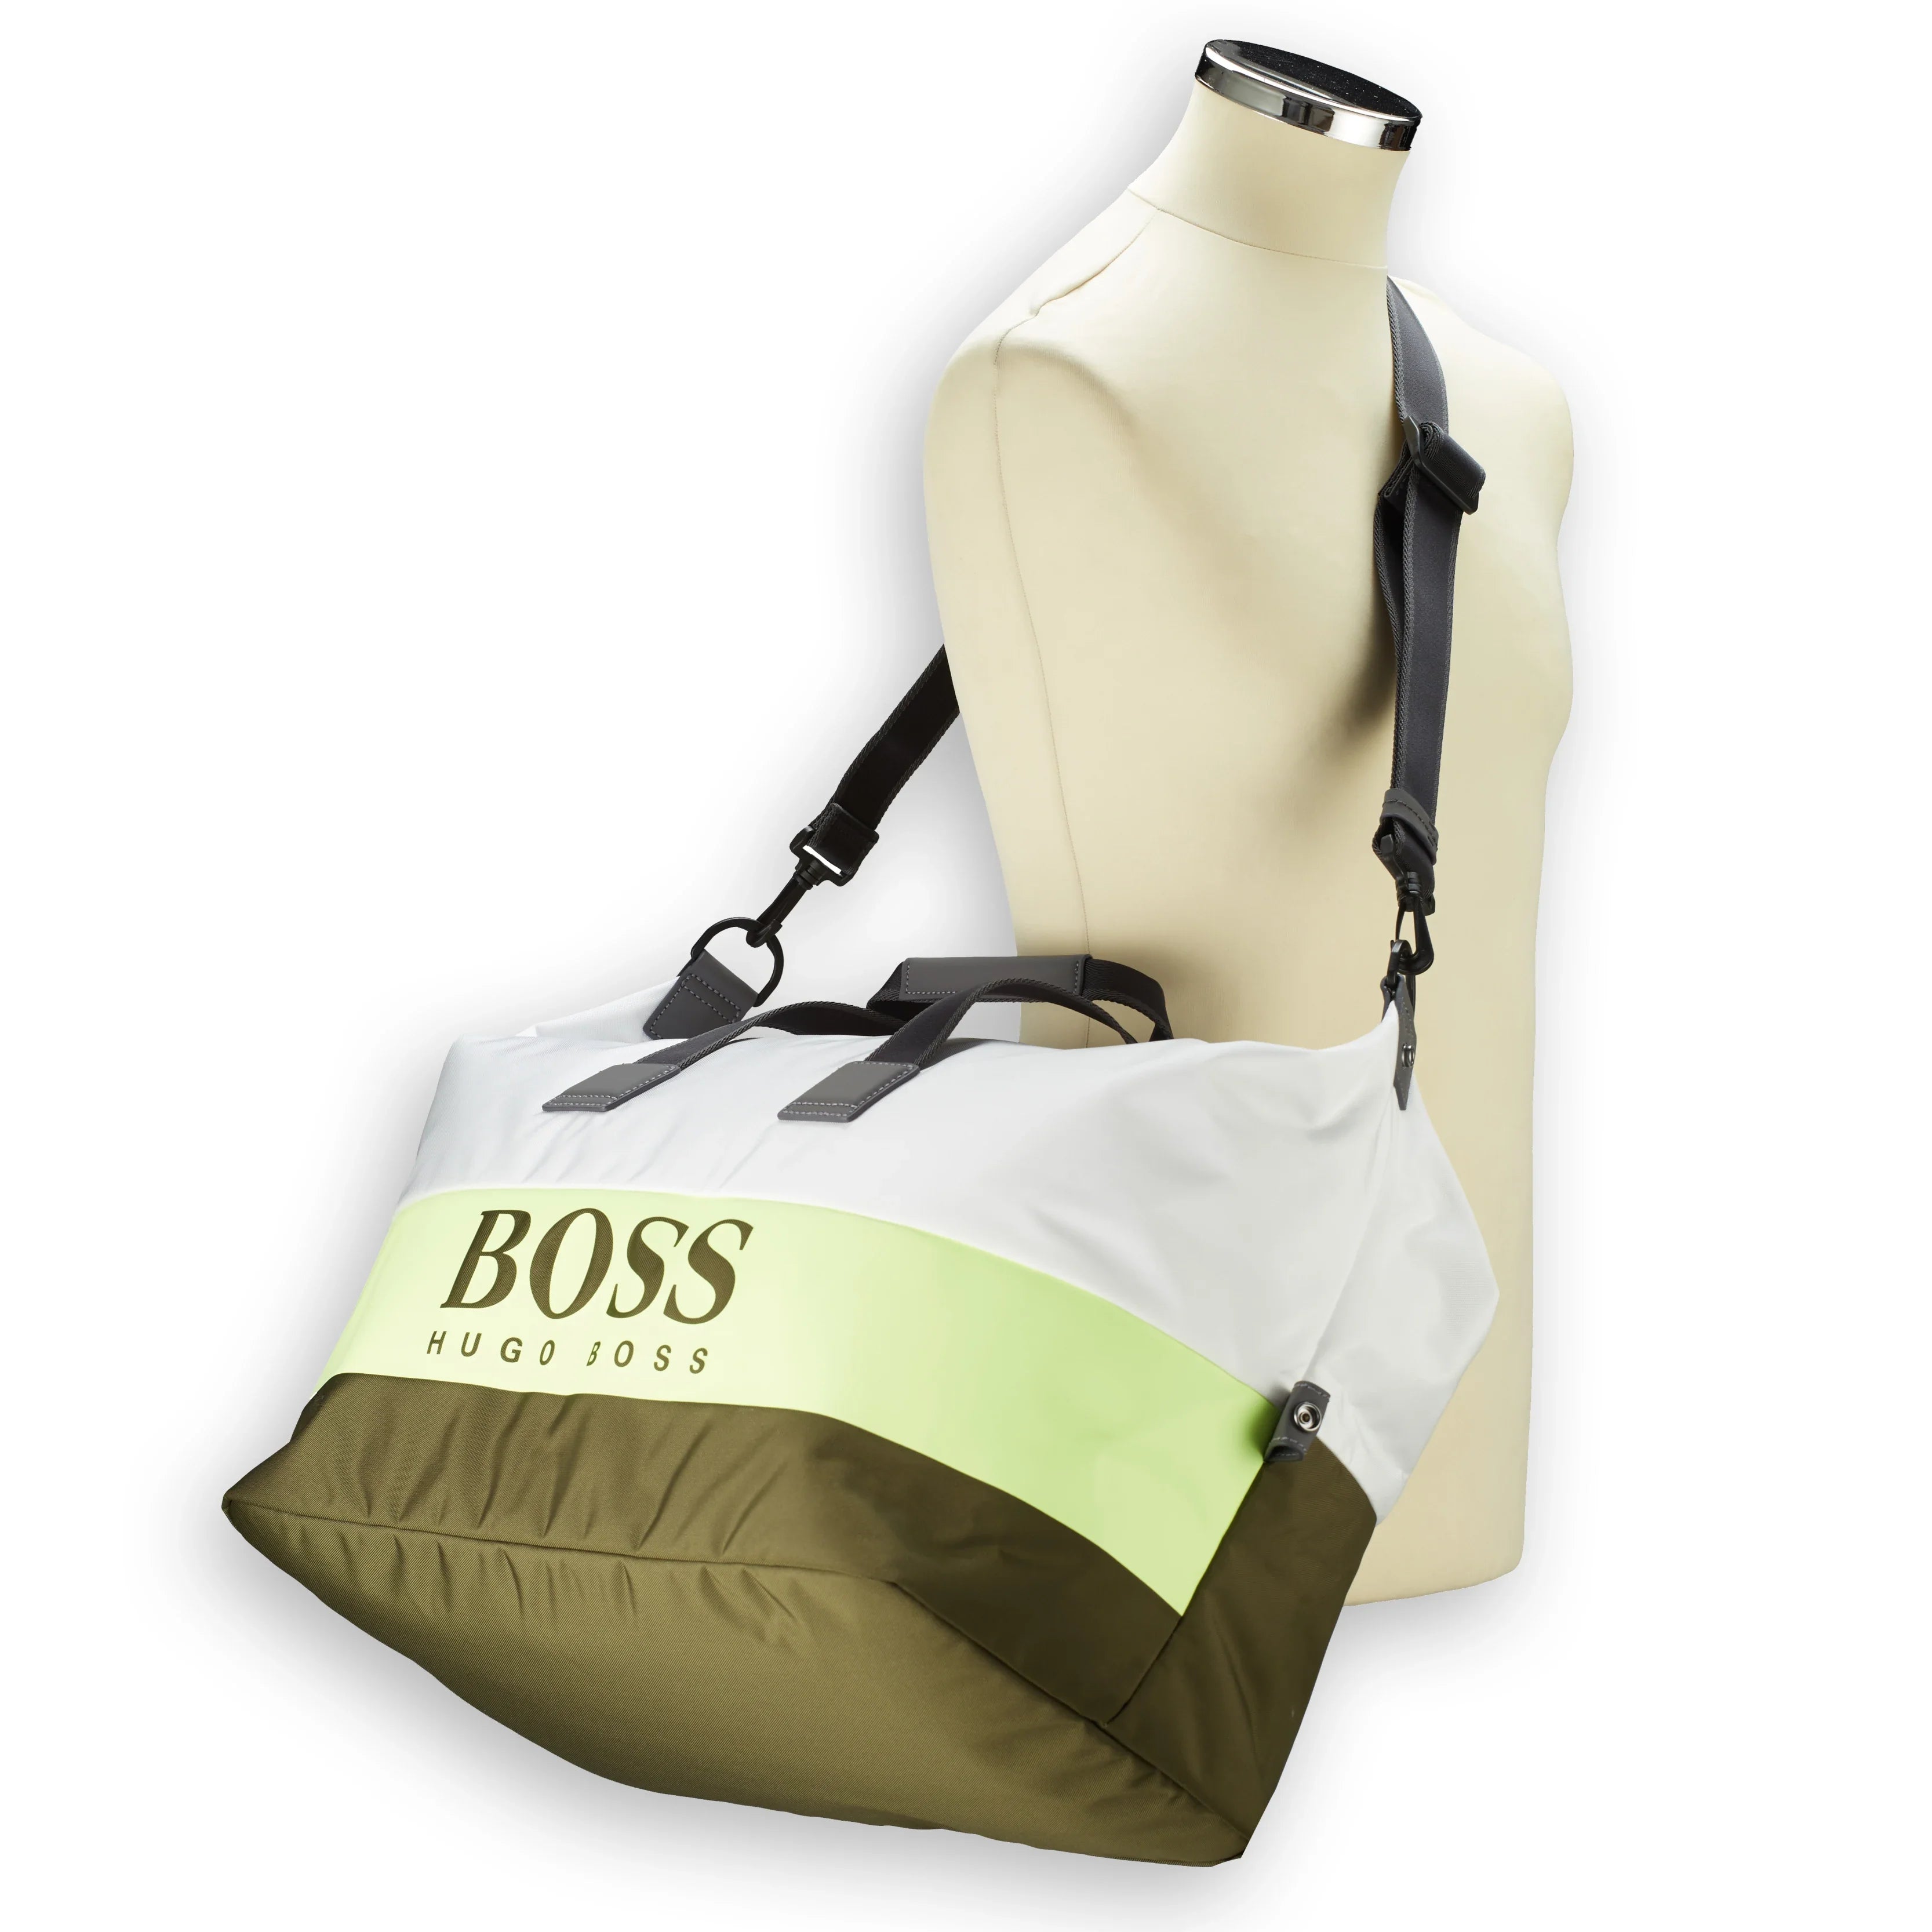 BOSS Pixel ST travel bag 52 cm - white green